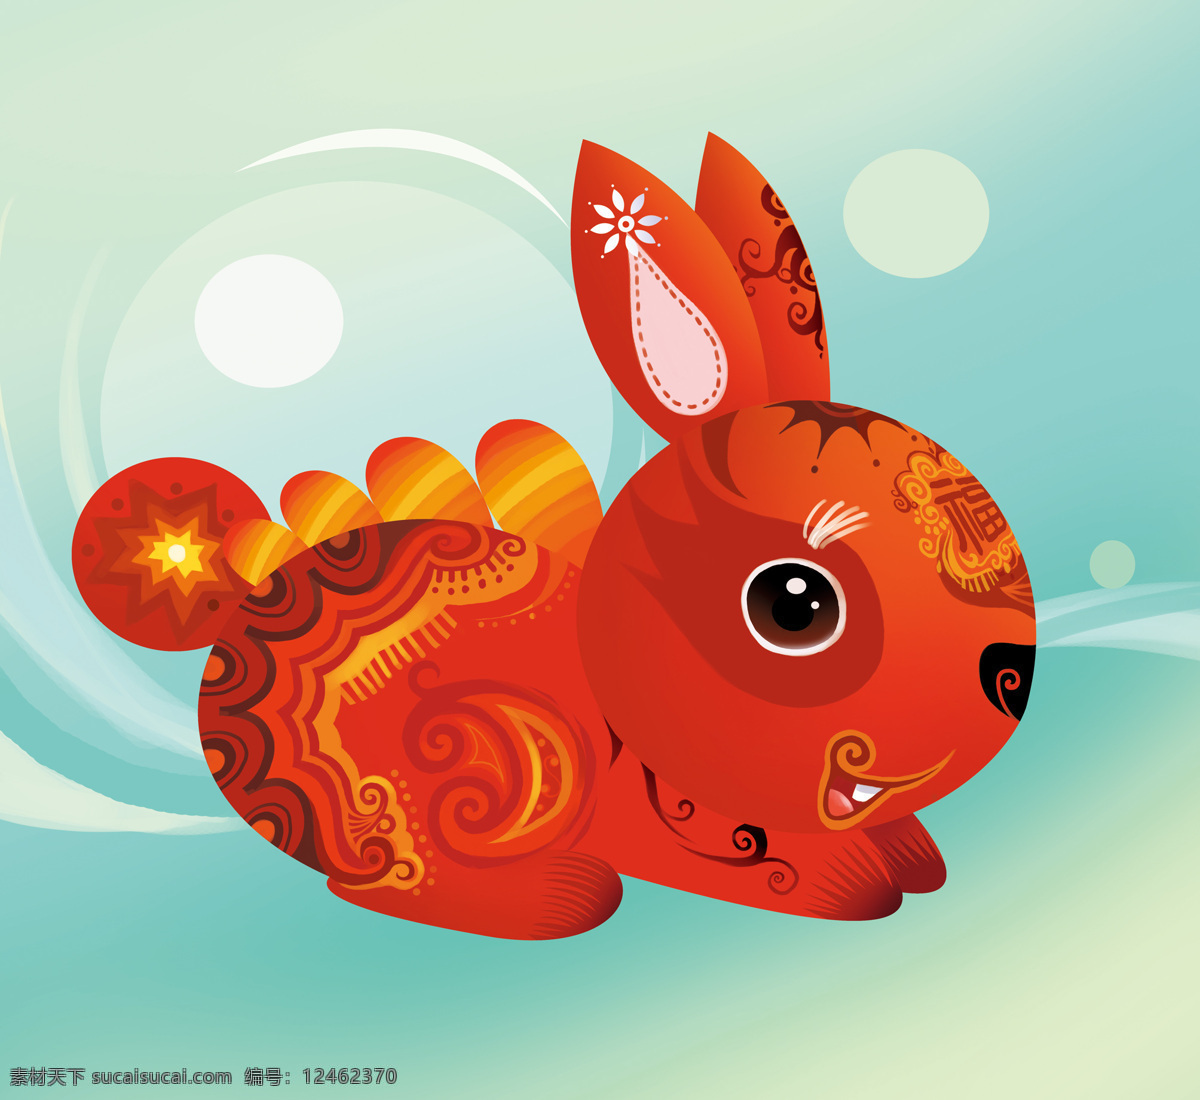 翅膀 传统 绘画 绘画书法 可爱 兔年 兔子 新年 中国 文化艺术 兔子设计素材 兔子模板下载 psd源文件